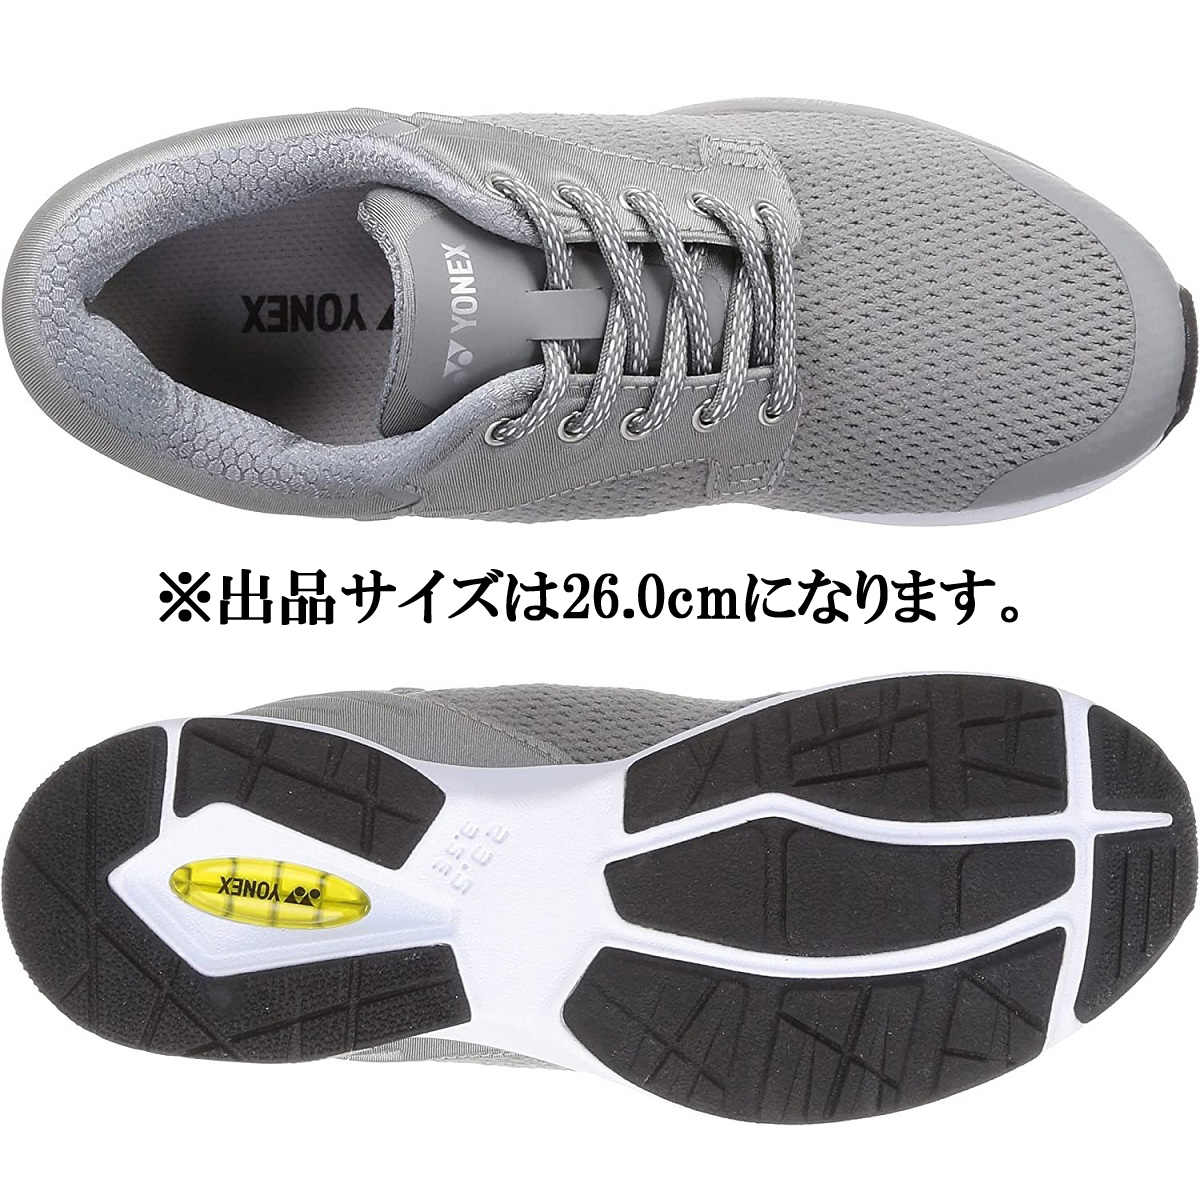 SHW116 GY 26.0cm Yonex walking jo silver g running power cushion shoes shoes 3.5E YONEX mesh light weight 